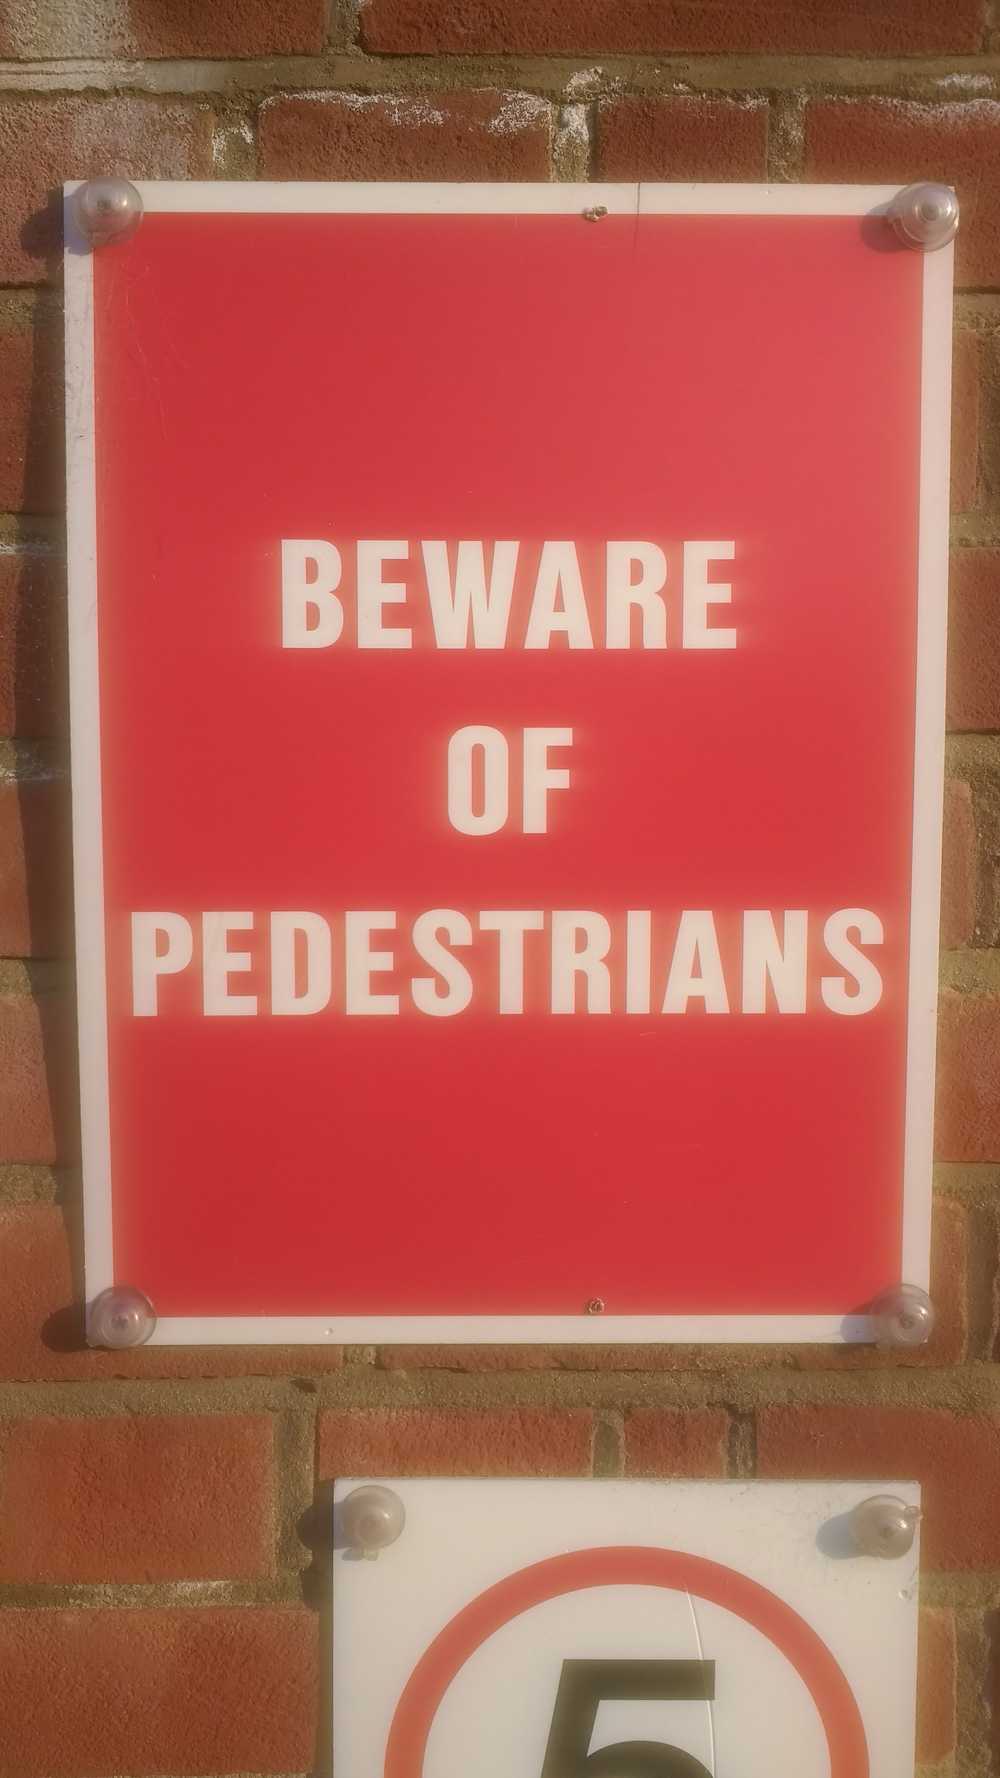 Beware of pedestrians